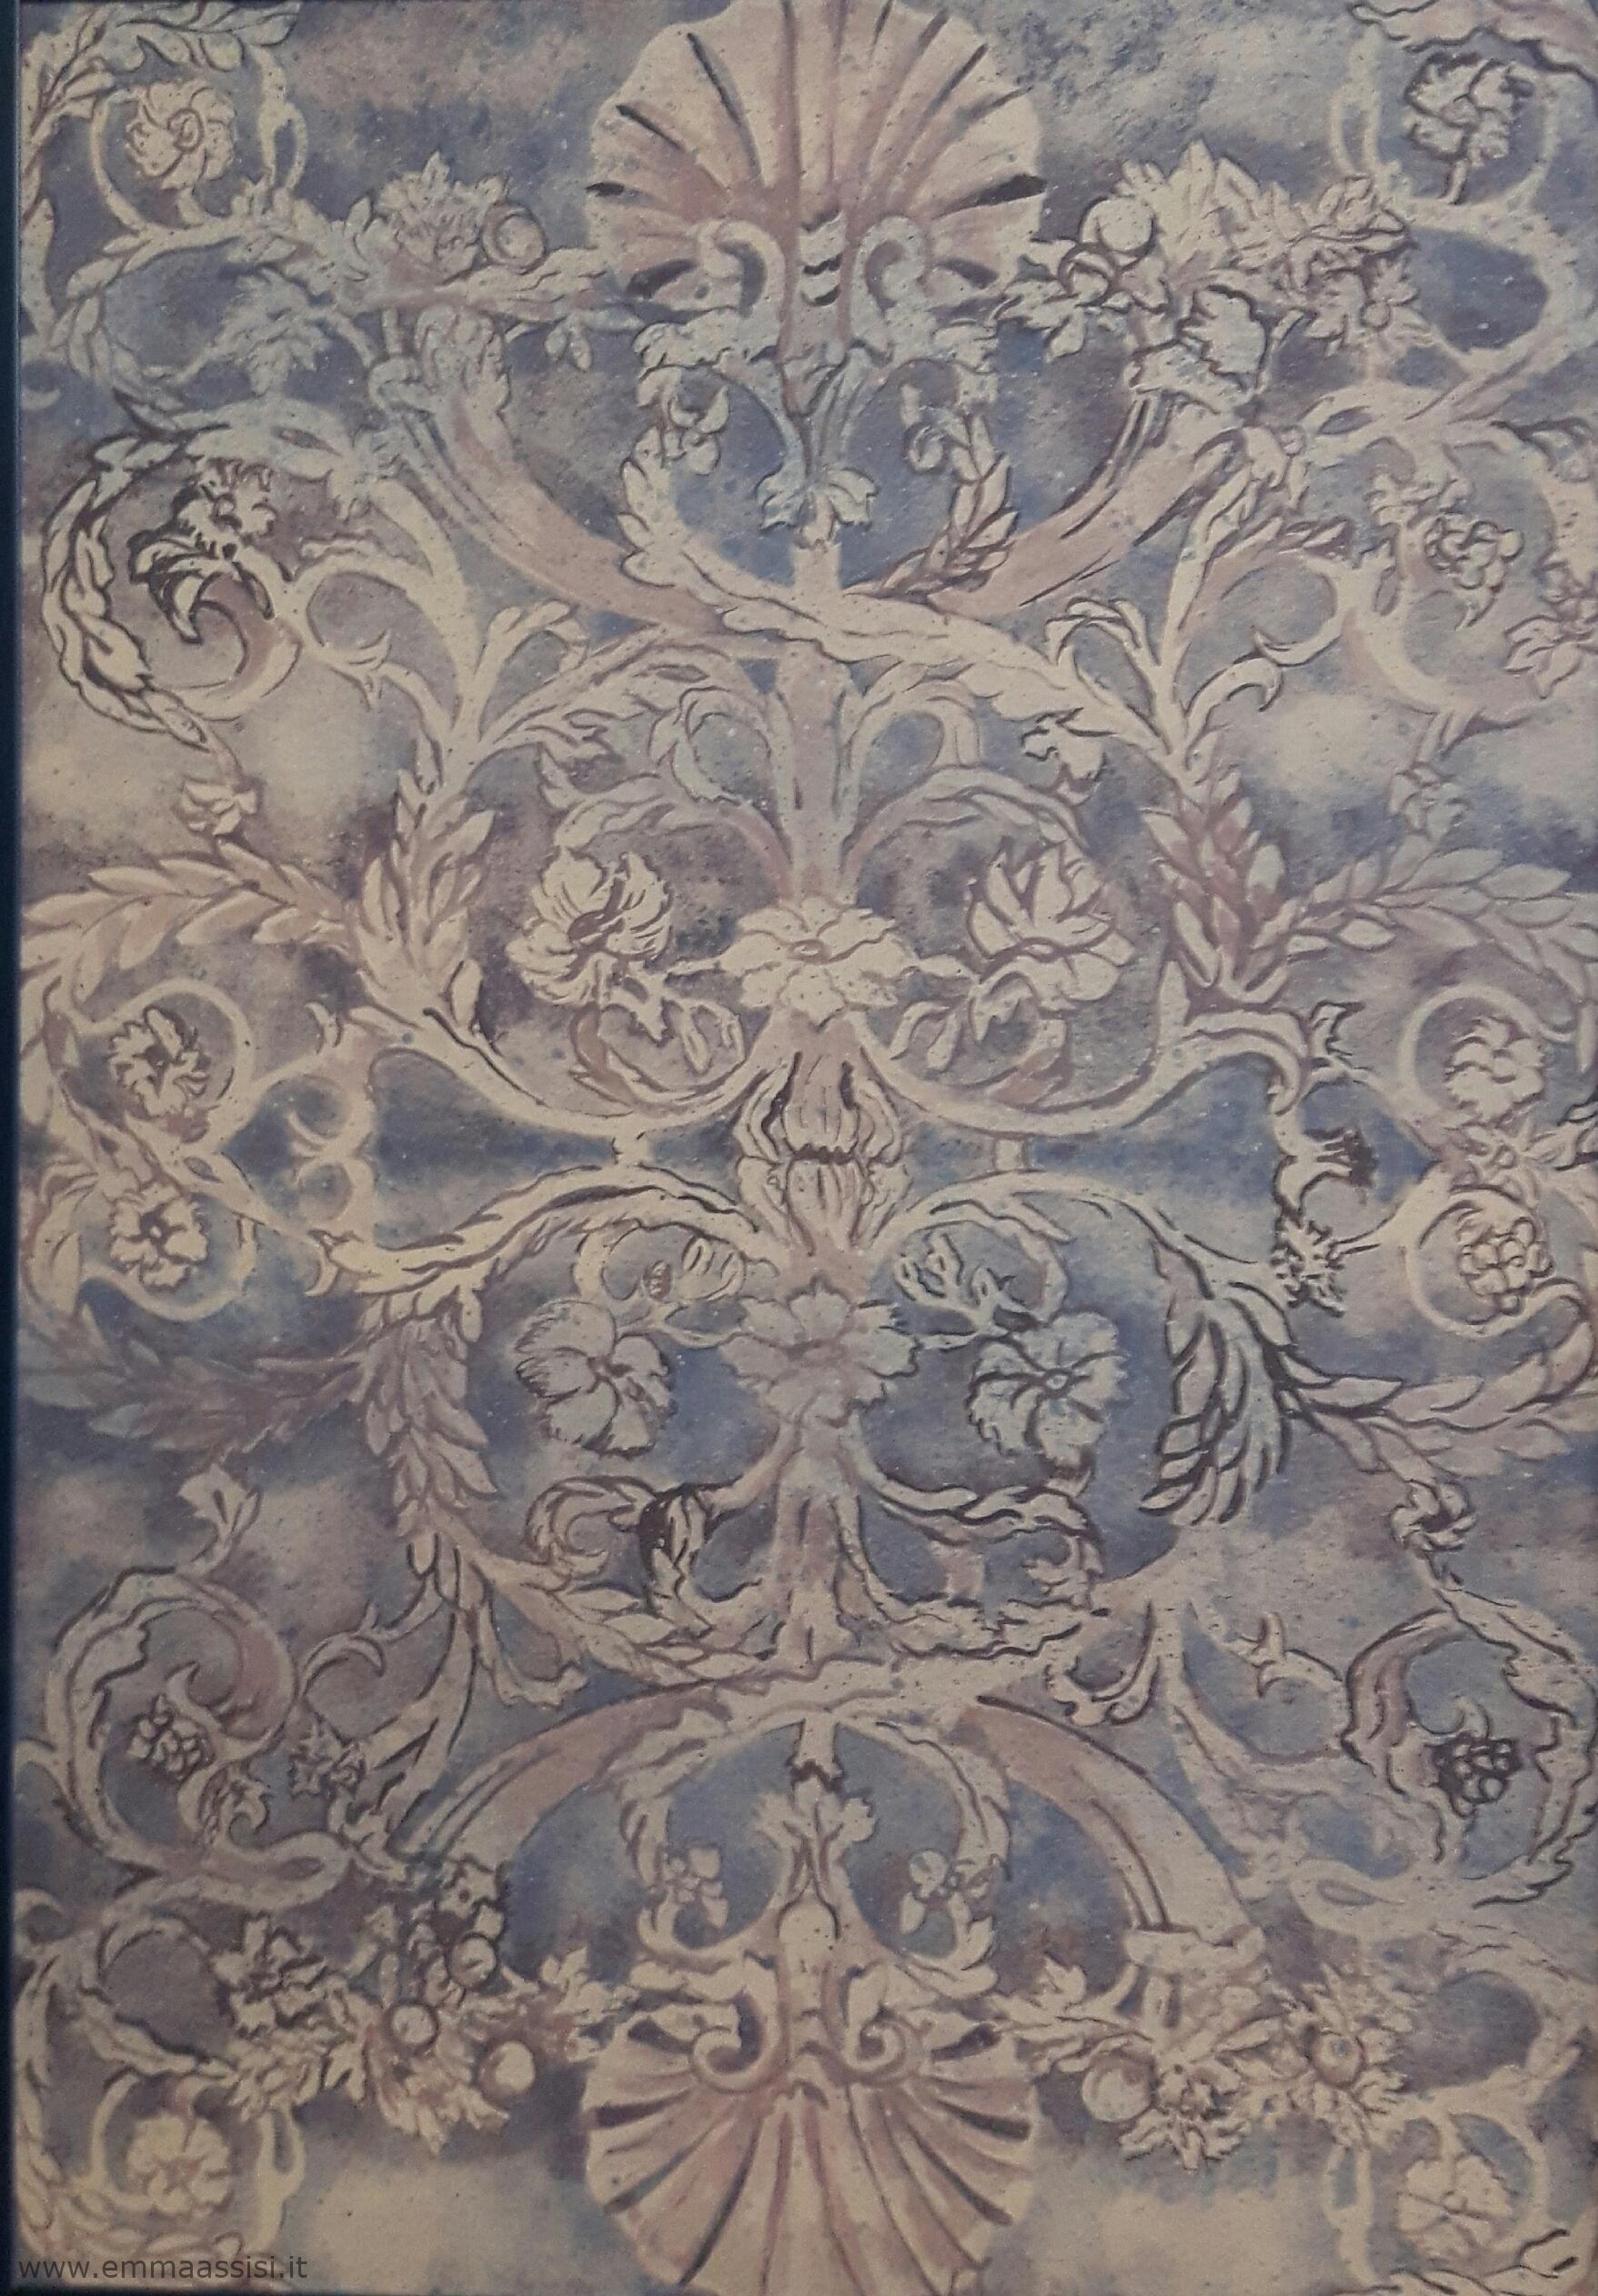 stile classico- decorazione grisaille con motivi rinascimentali indaco su tela